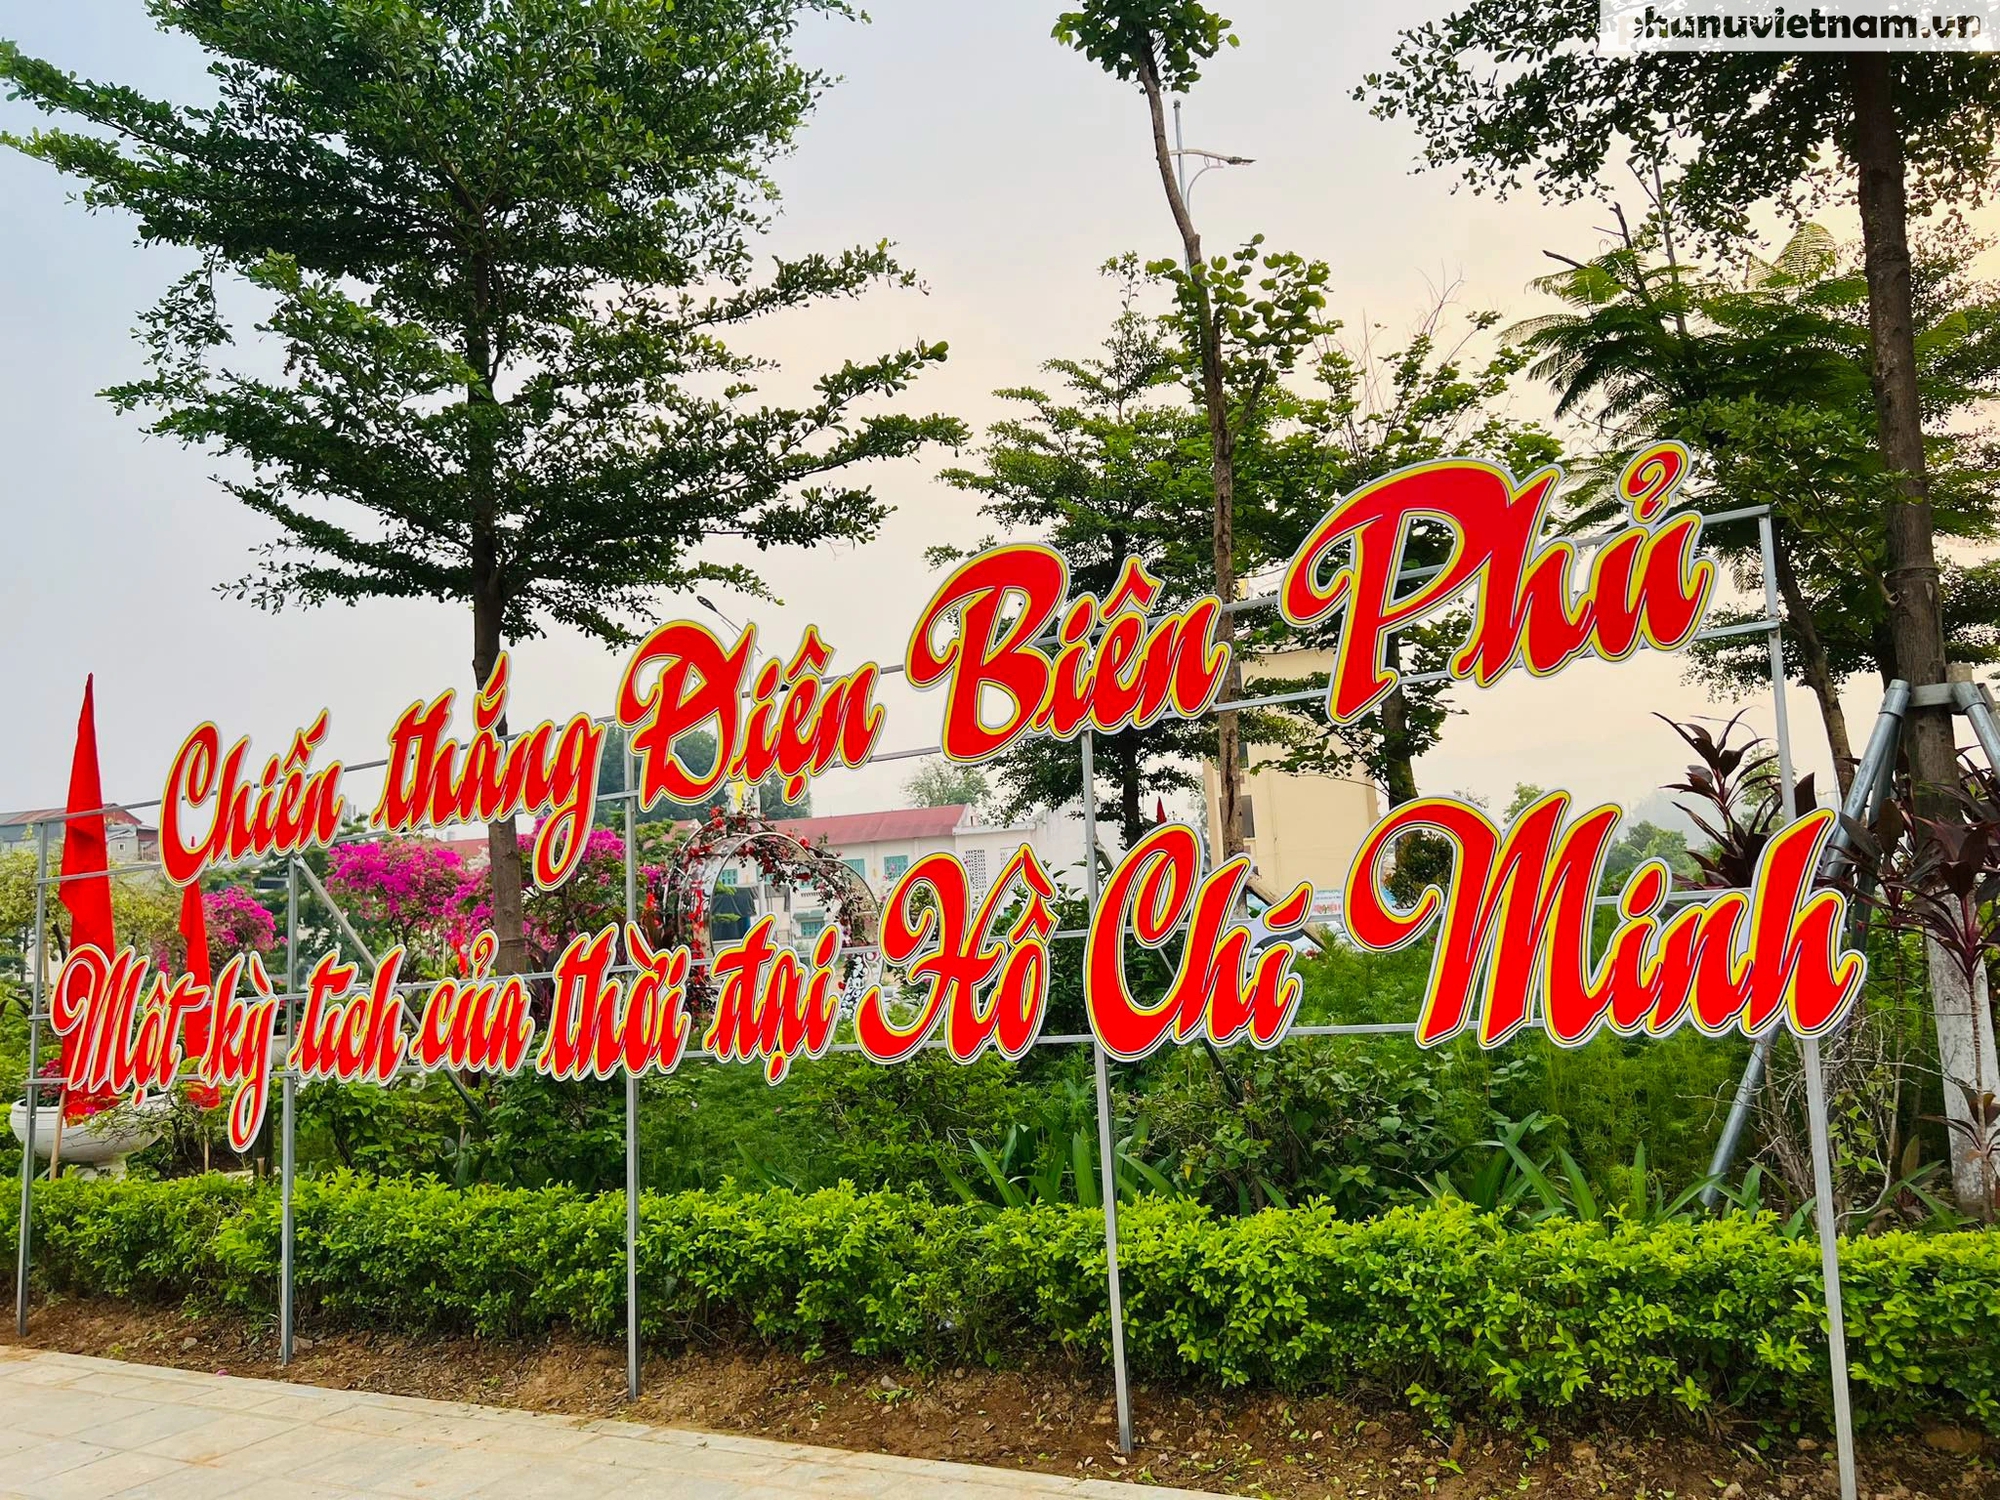 Thành phố Điện Biên Phủ nhộn nhịp, rực rỡ cờ hoa chào mừng kỷ niệm 70 năm chiến thắng lịch sử- Ảnh 6.